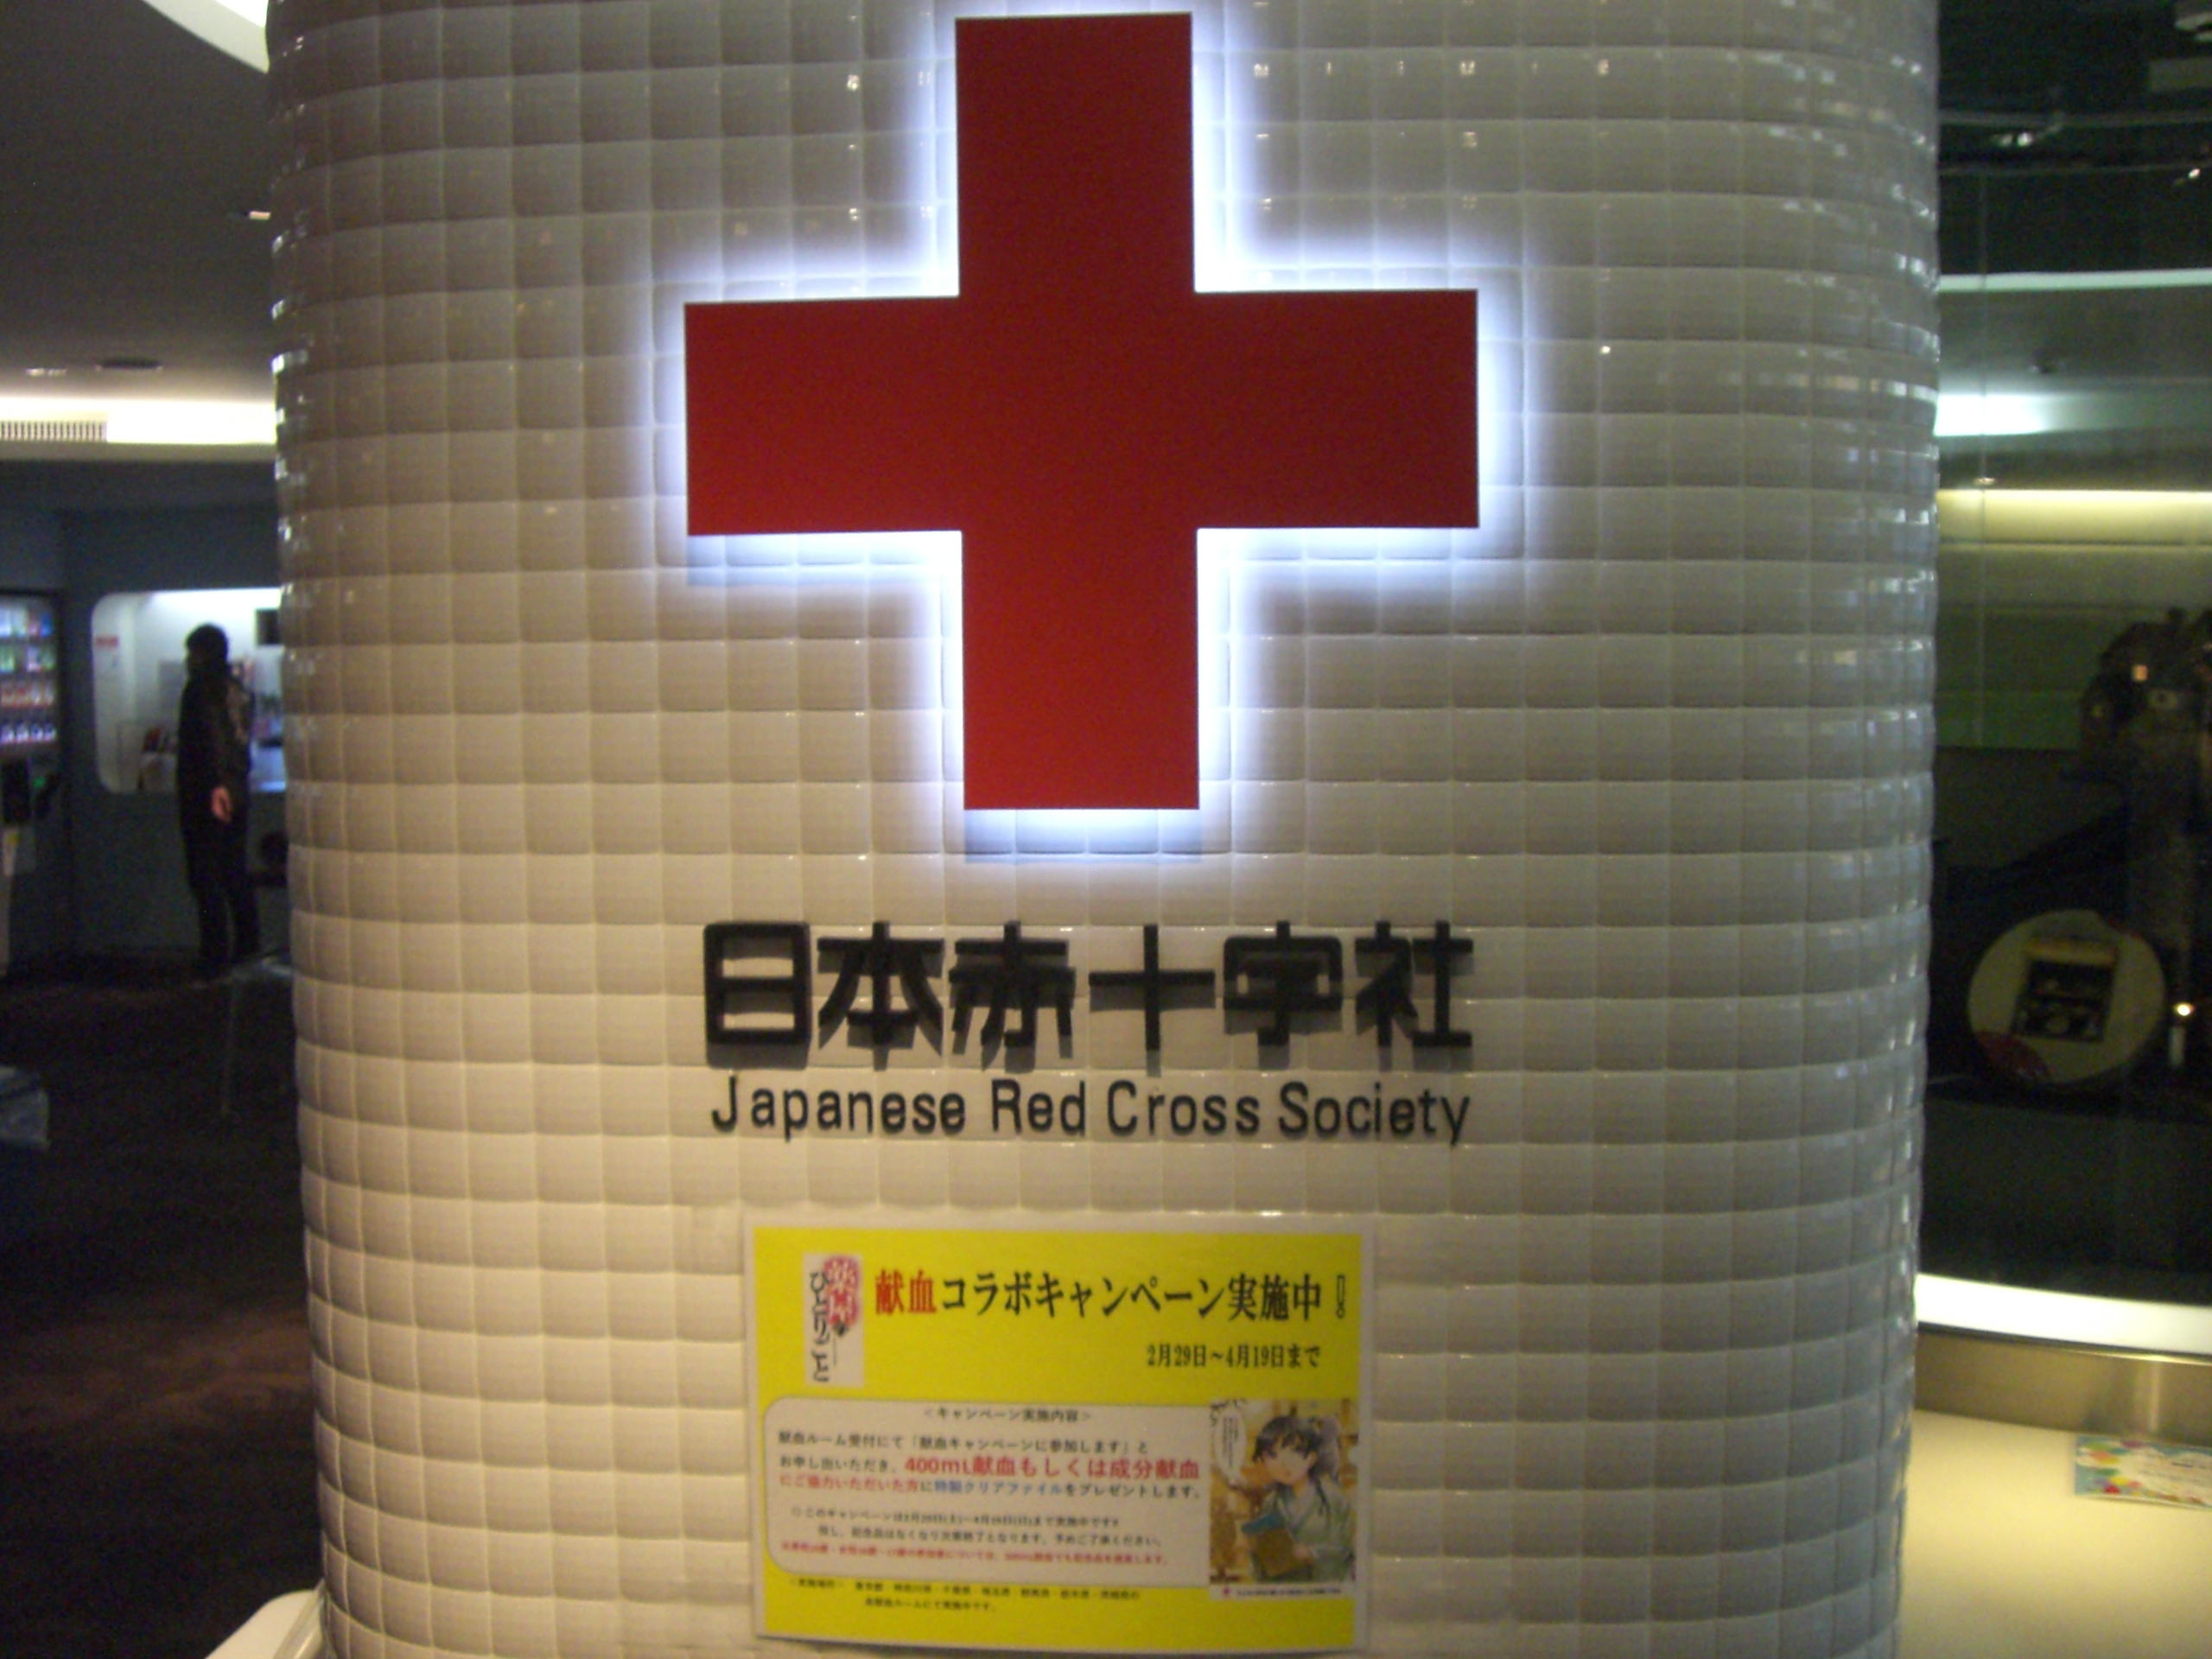 Akiba探索動画 情けは人の為ならず 寒い今こそ献血に コラボキャンペーンも実施中です Akiba Tv